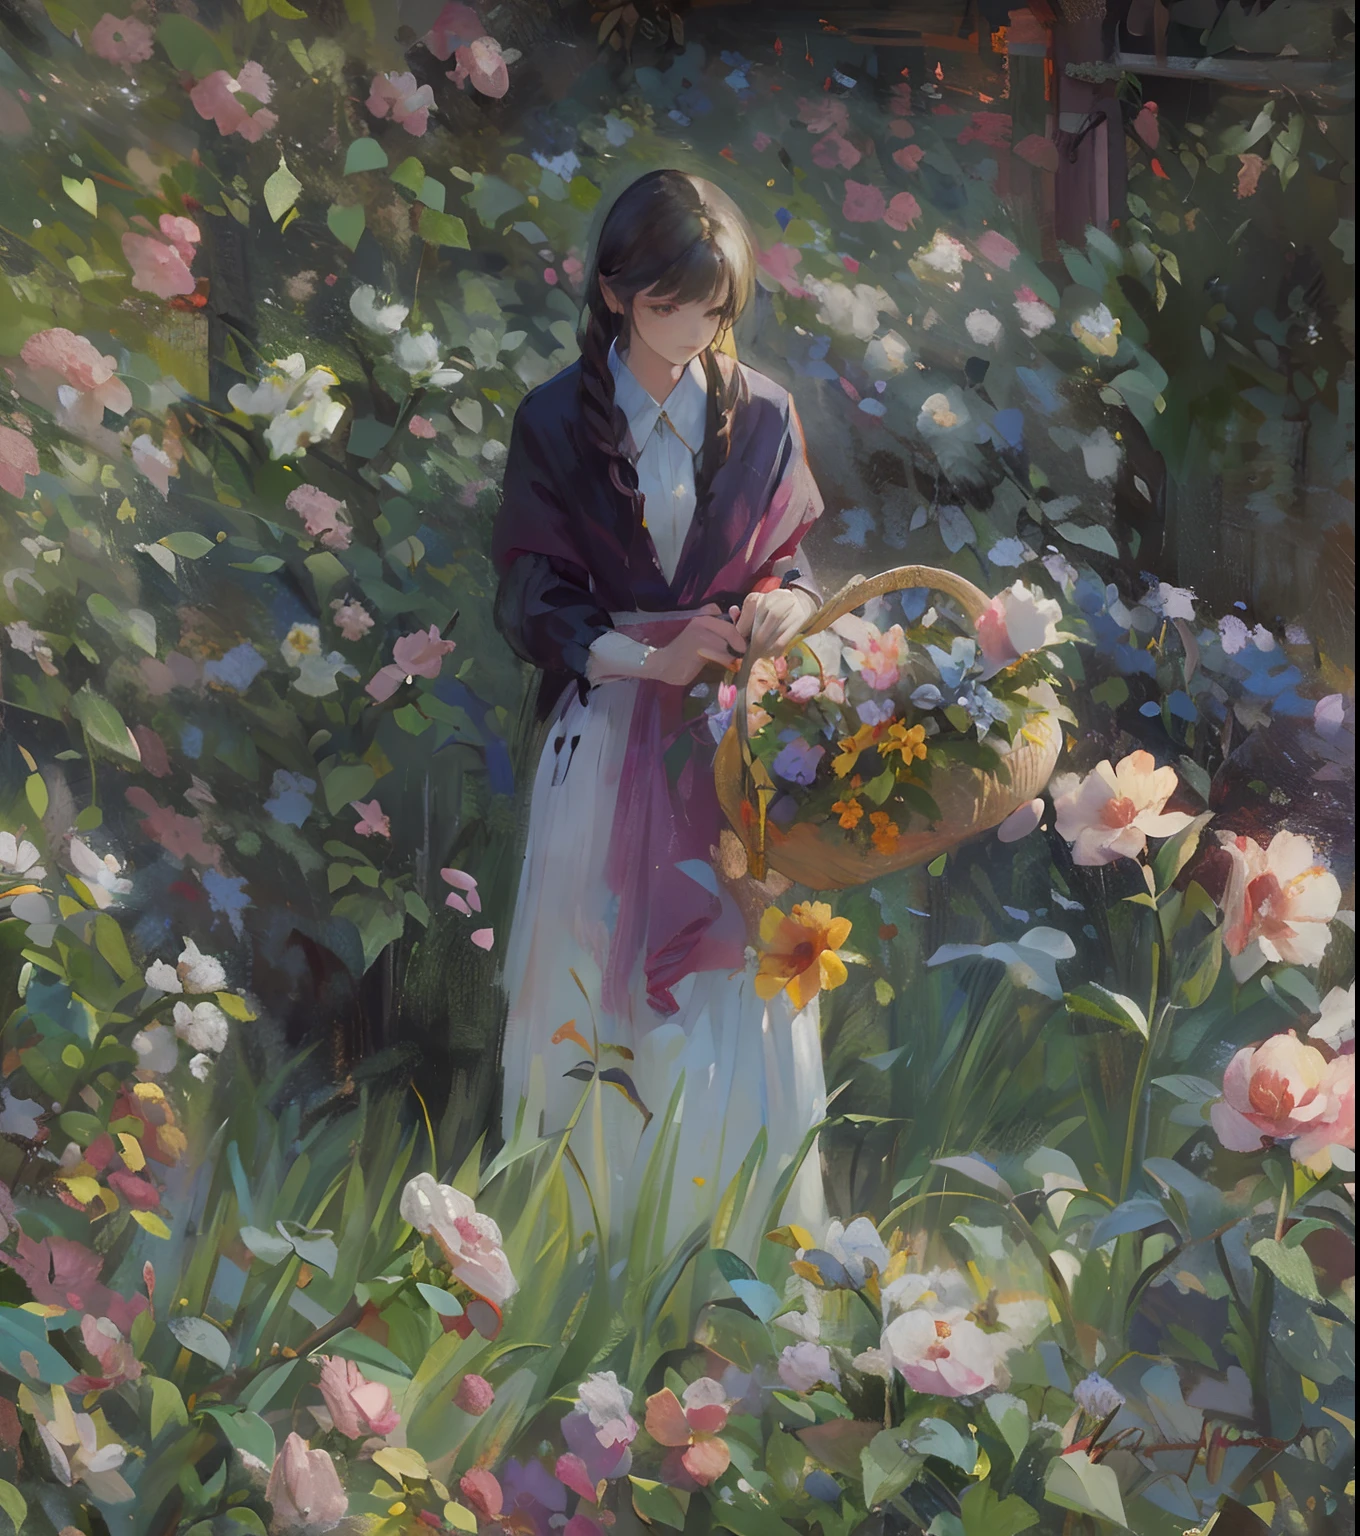 pintura de uma mulher em um jardim com flores e uma cesta de flores, colhendo flores, Resolução 24K, artístico, impressionism, hiperdetalhado,